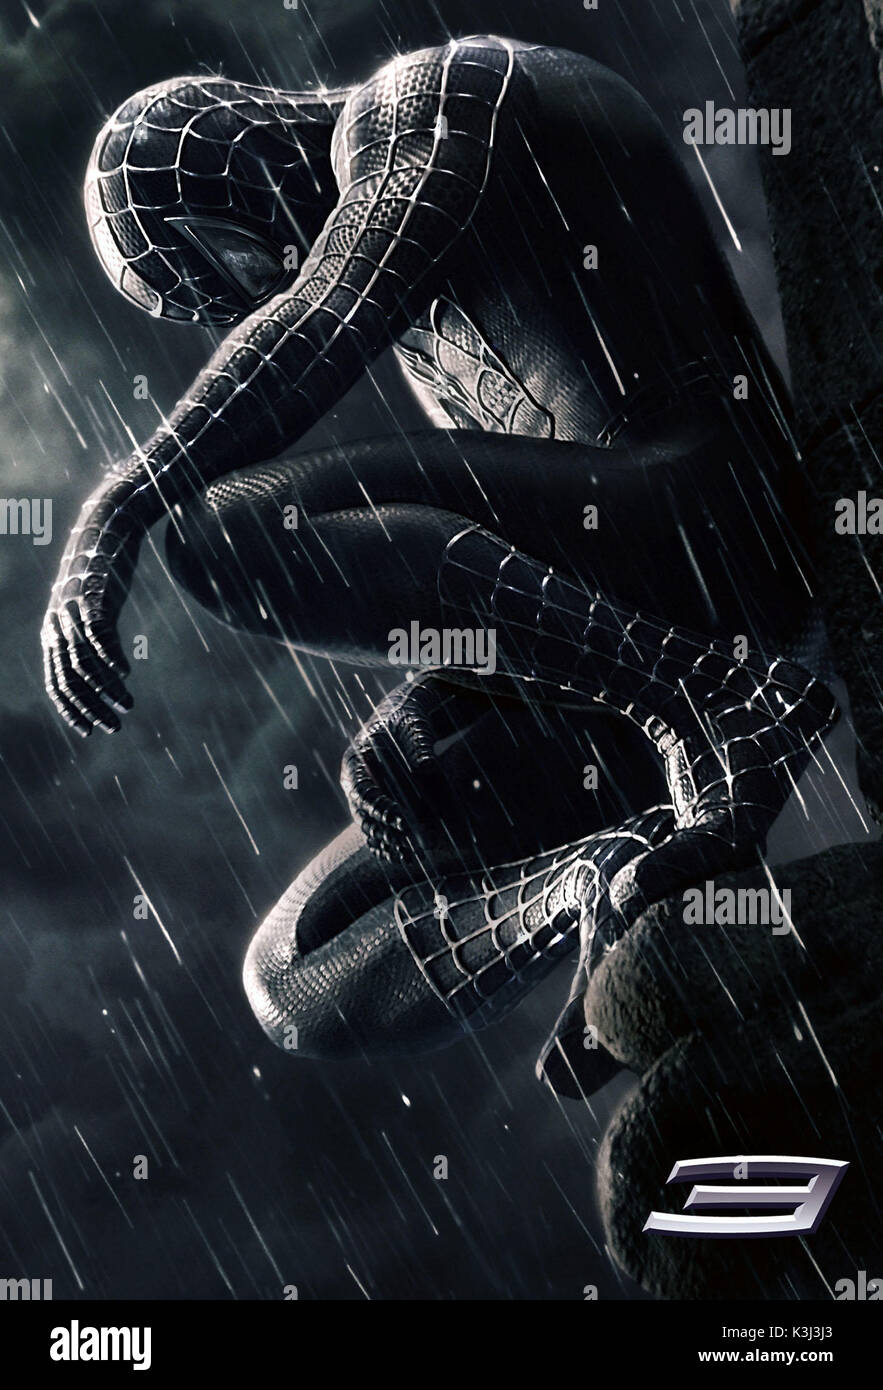 Spider-Man 3 Nutzung der Bild muss mit der folgenden Bildunterschrift  begleitet werden. Die Bildunterschrift bestätigt, dass Spider-Man trägt  einen schwarzen Anzug, so wird davon ausgegangen, dass es sich NICHT um  eine schwarz-weiß